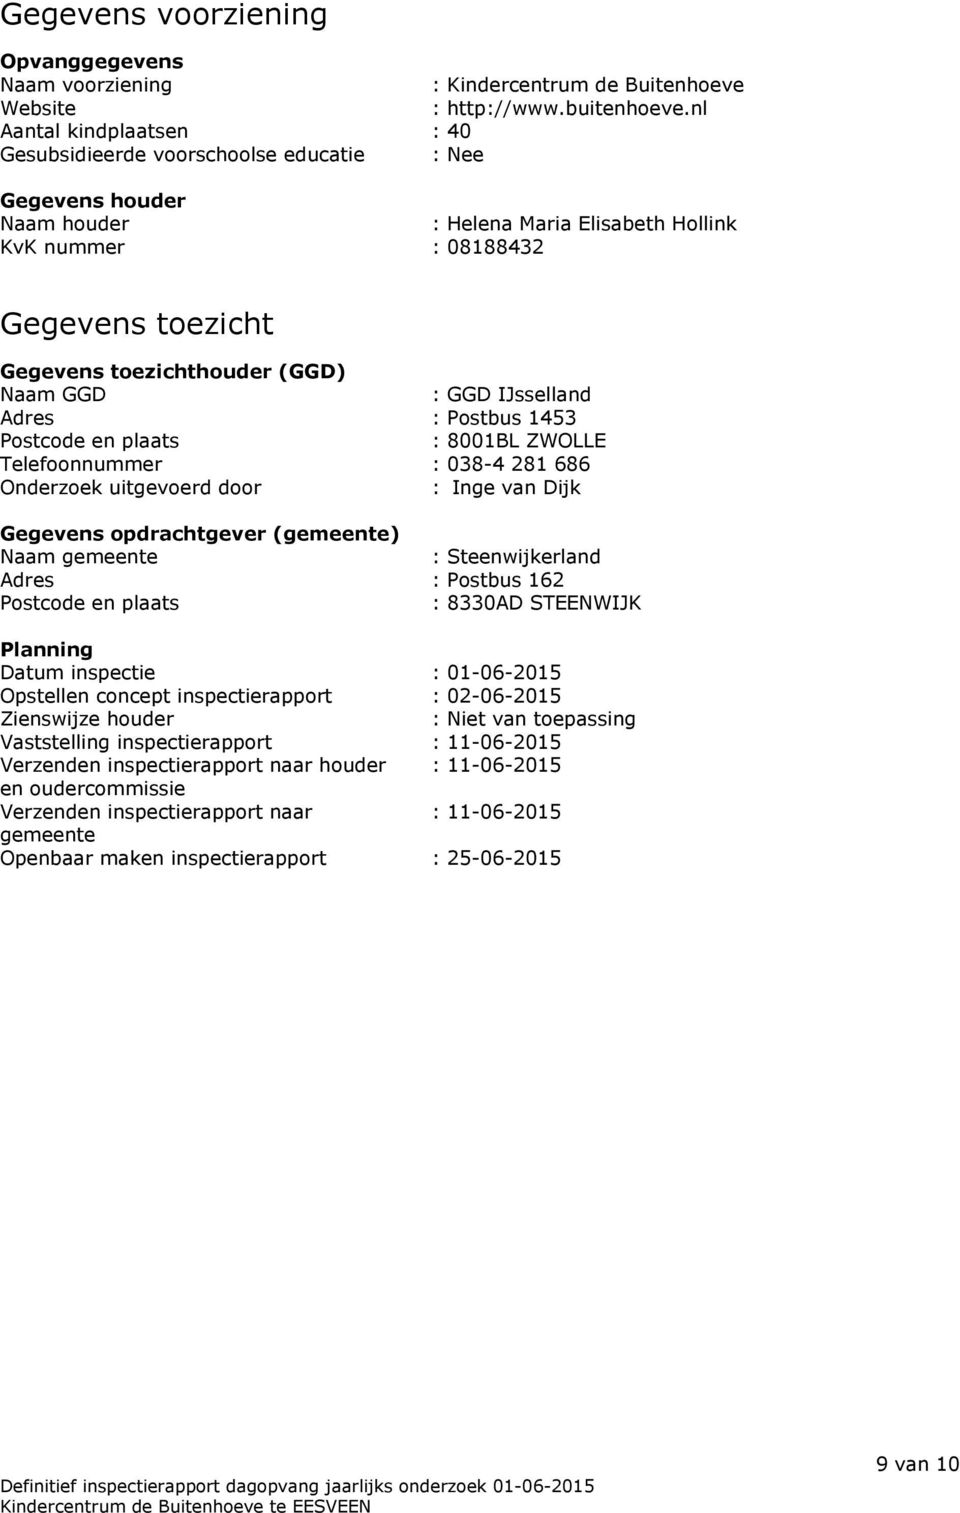 (GGD) Naam GGD : GGD IJsselland Adres : Postbus 1453 Postcode en plaats : 8001BL ZWOLLE Telefoonnummer : 038-4 281 686 Onderzoek uitgevoerd door : Inge van Dijk Gegevens opdrachtgever (gemeente) Naam